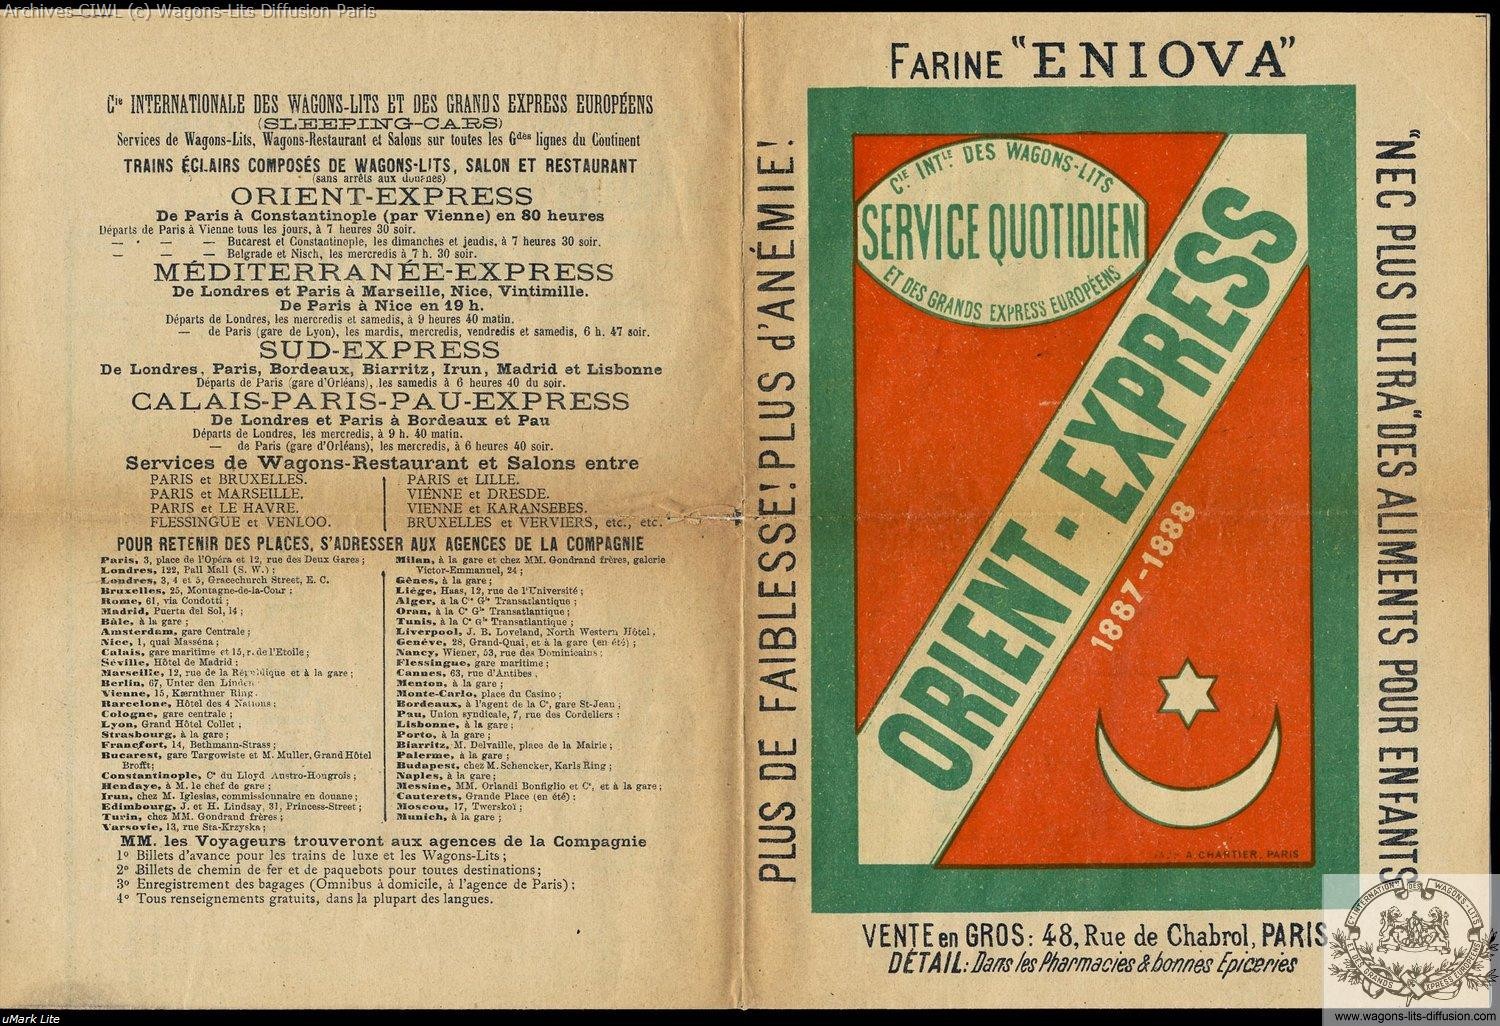 Wl first orient express brochure 1887